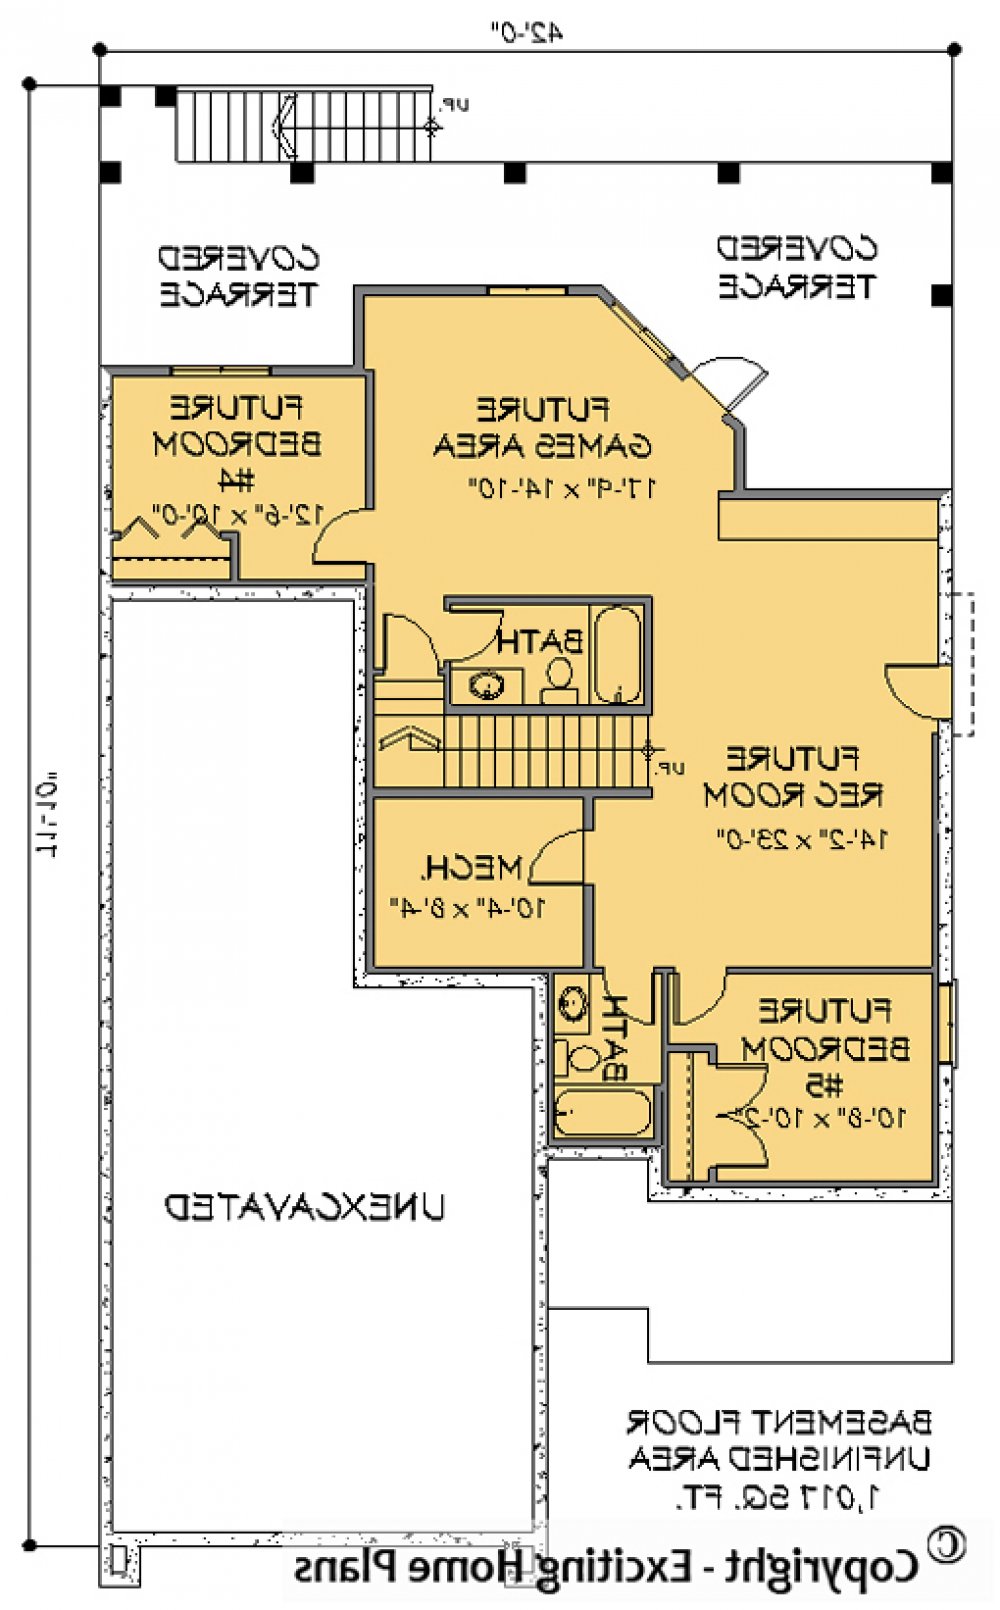 House Plan E1151-10 Lower Floor Plan